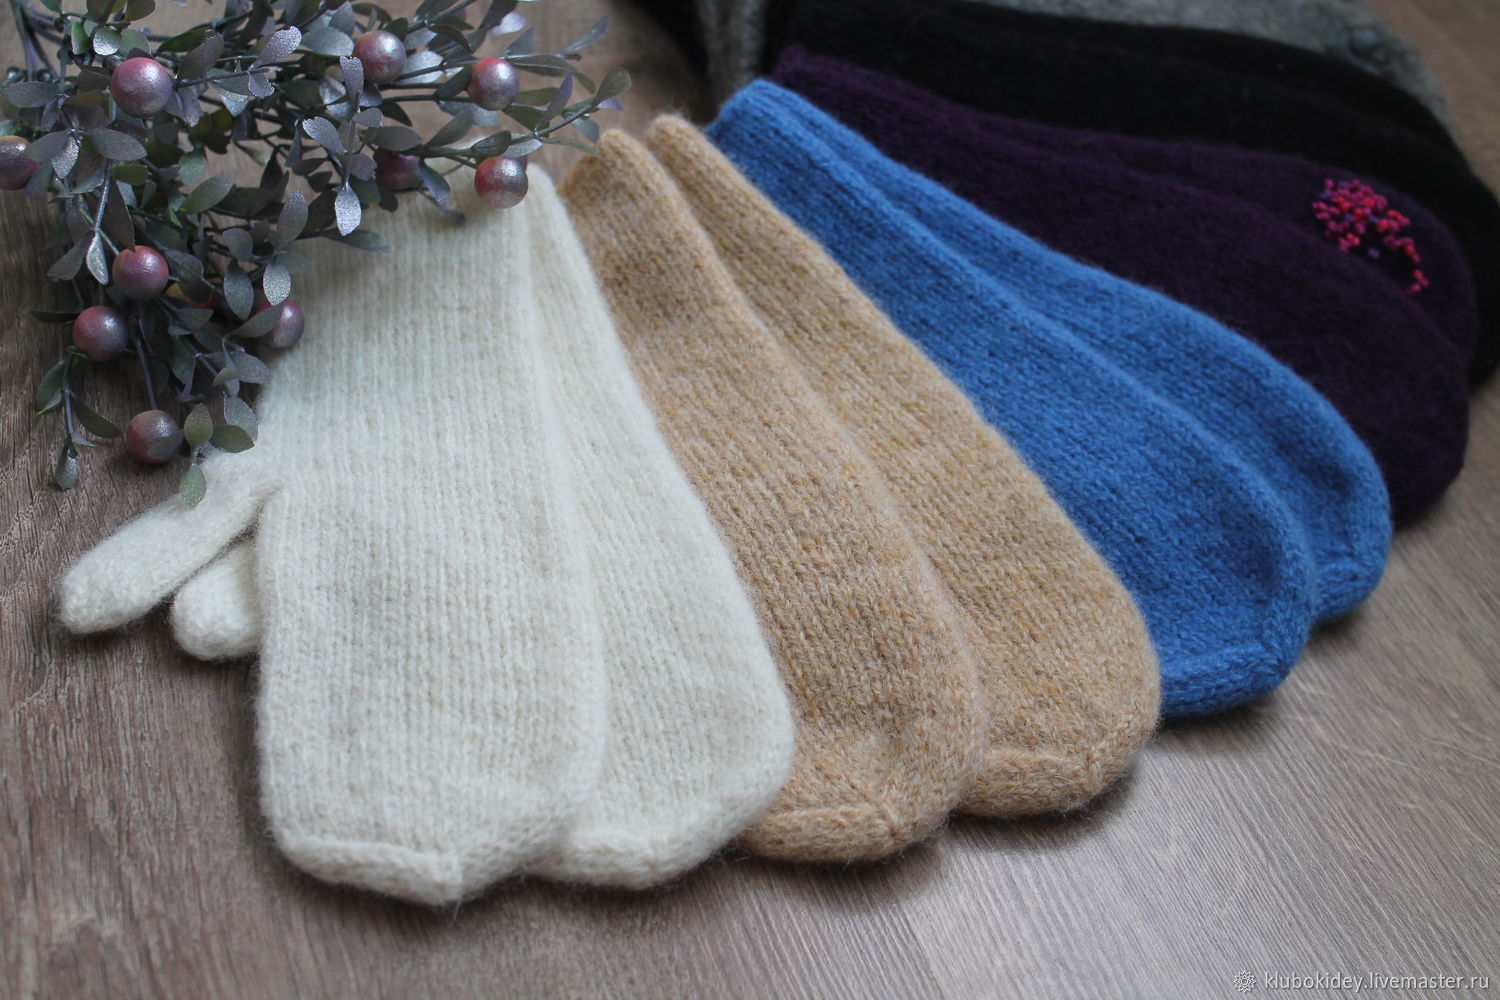 Вязание перчаток спицами - пособие для начинающих | Планета Вязания